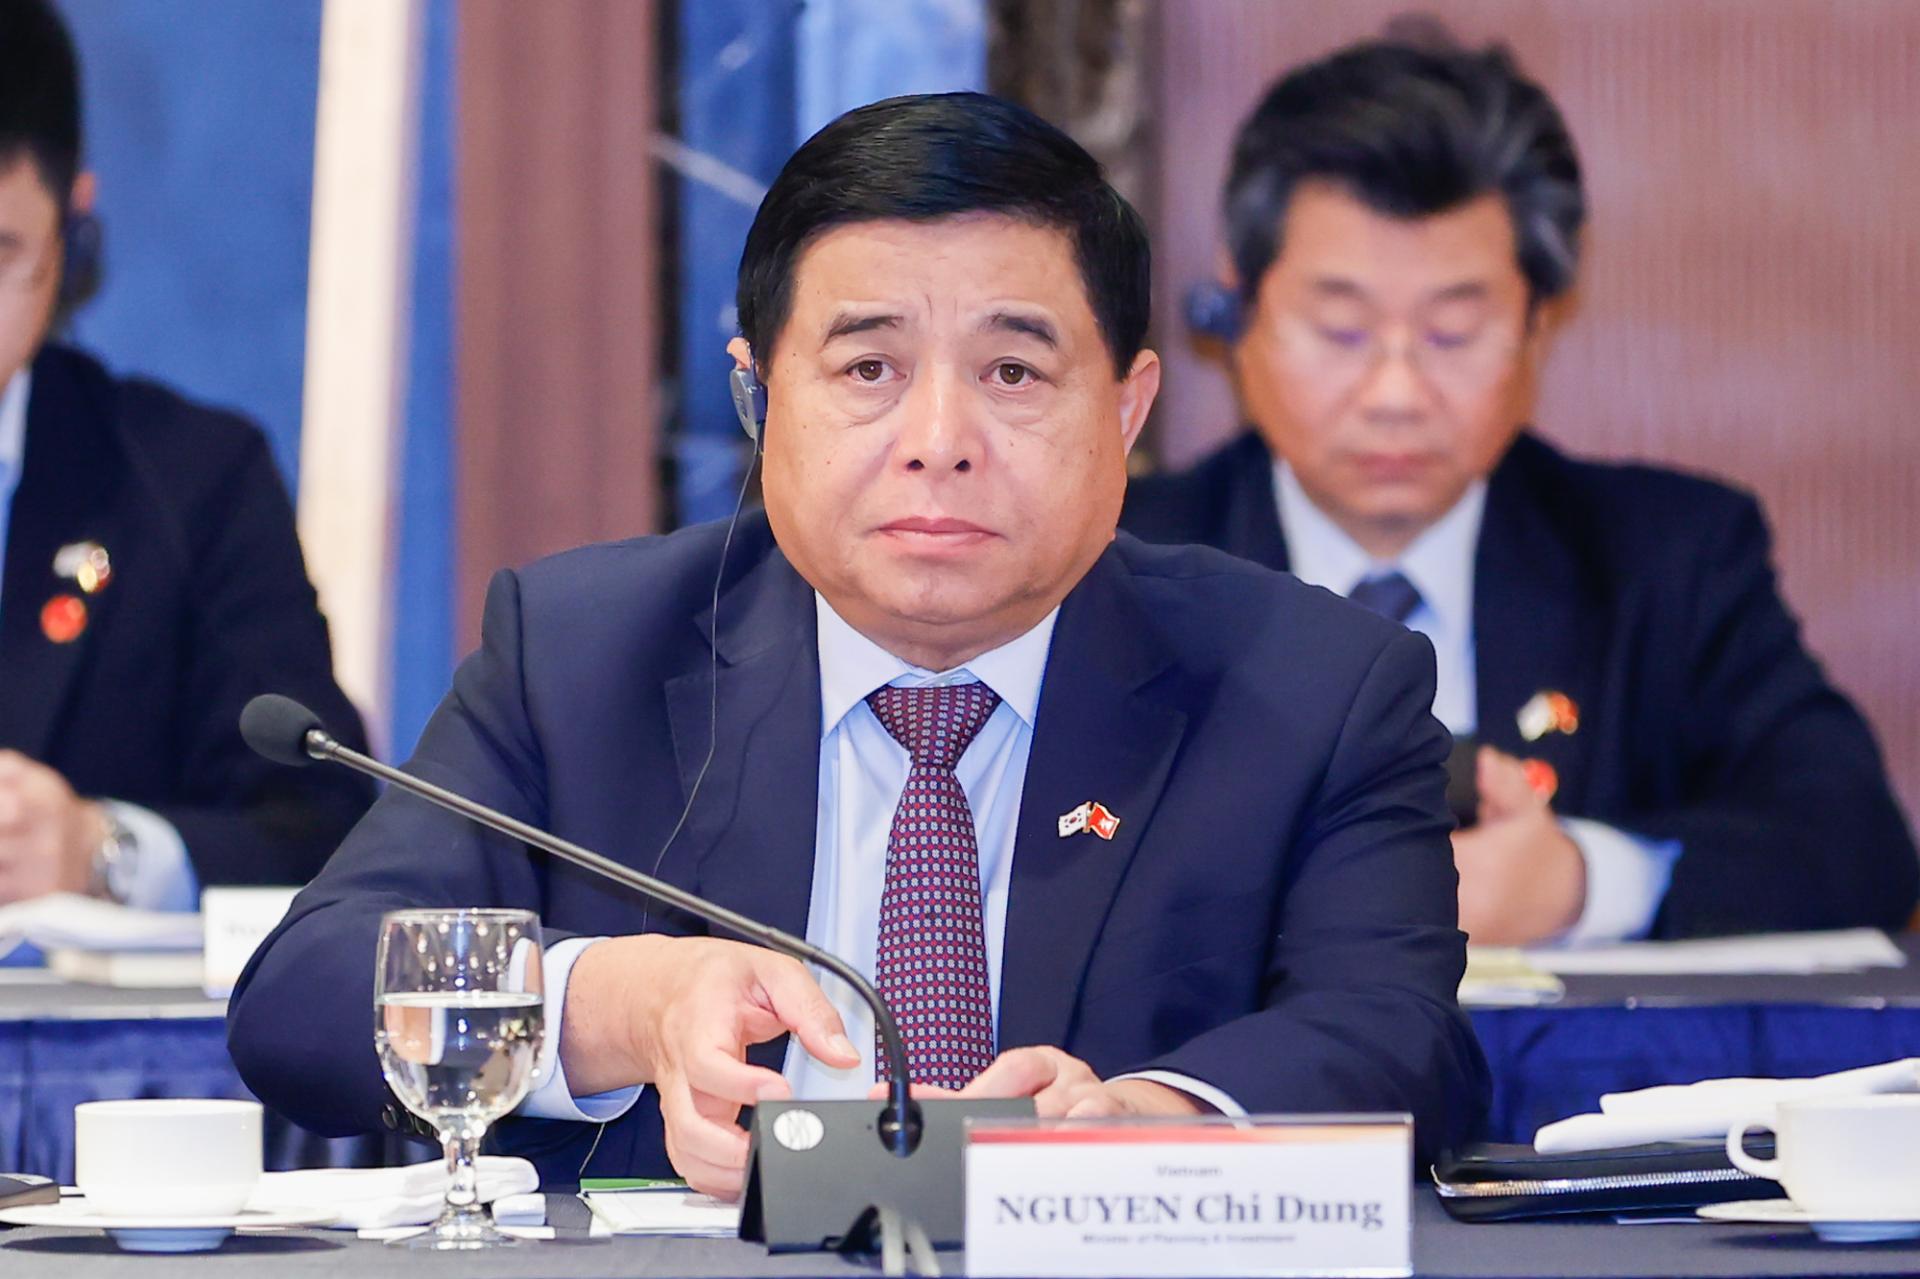 Giải đáp về các vấn đề về đầu tư, Bộ trưởng Bộ Kế hoạch và Đầu tư Nguyễn Chí Dũng đánh giá cao đóng góp của doanh nghiệp Hàn Quốc đối với sự phát triển của Việt Nam.